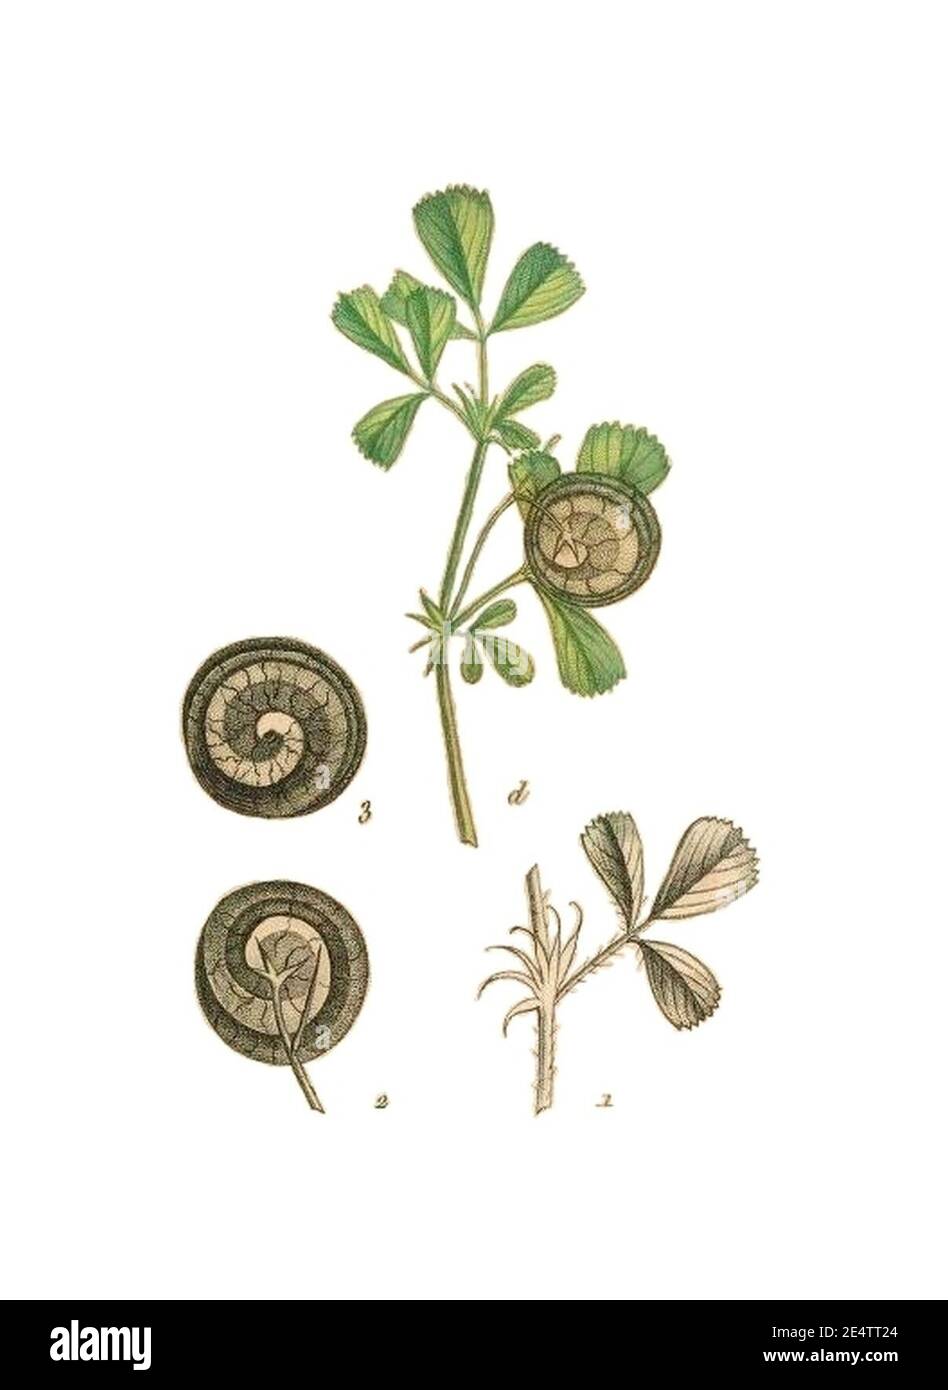 Medicago orbicularis La flore et la pomone françaises. Stock Photo